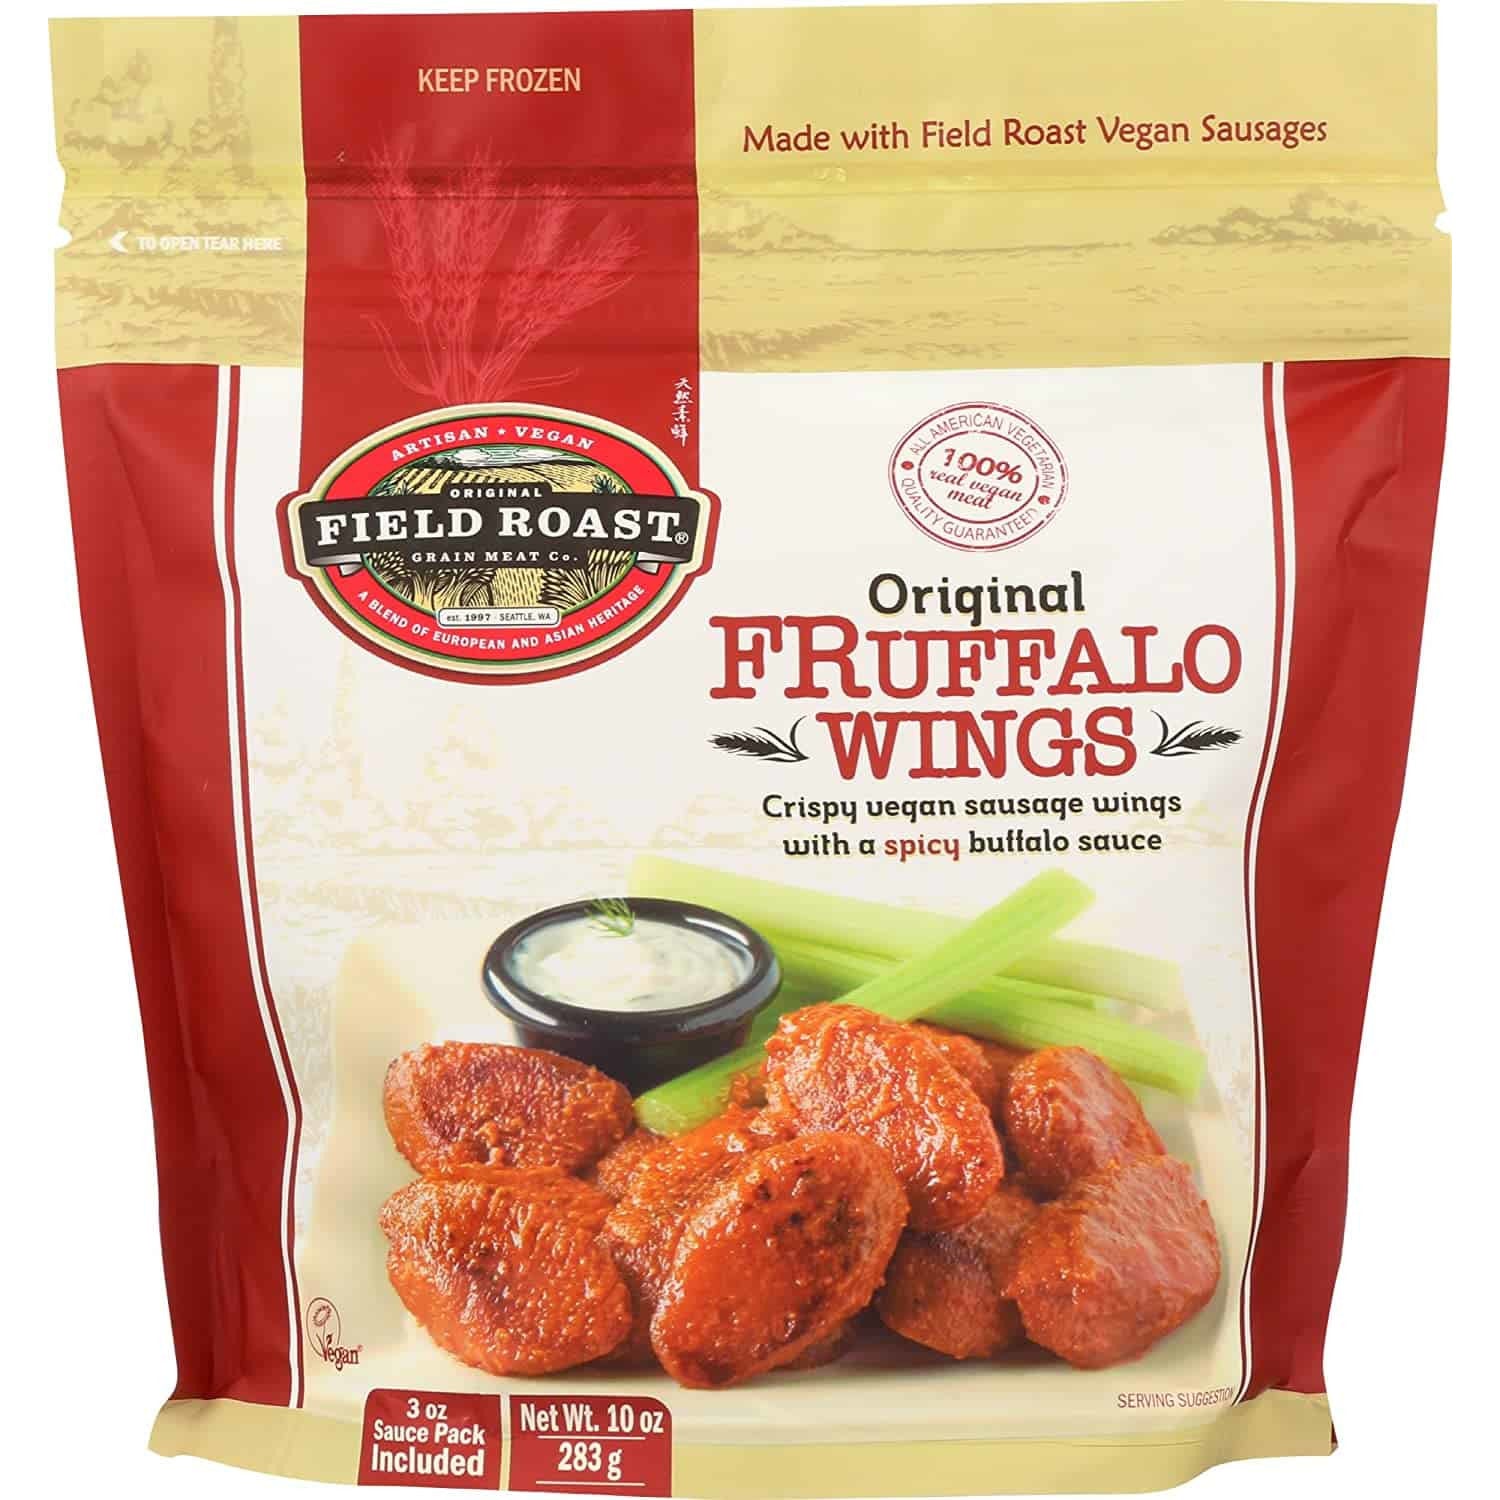 Field Roast, Vegan Fruffalo, Buffalo Style Wings, 10 oz (Frozen)